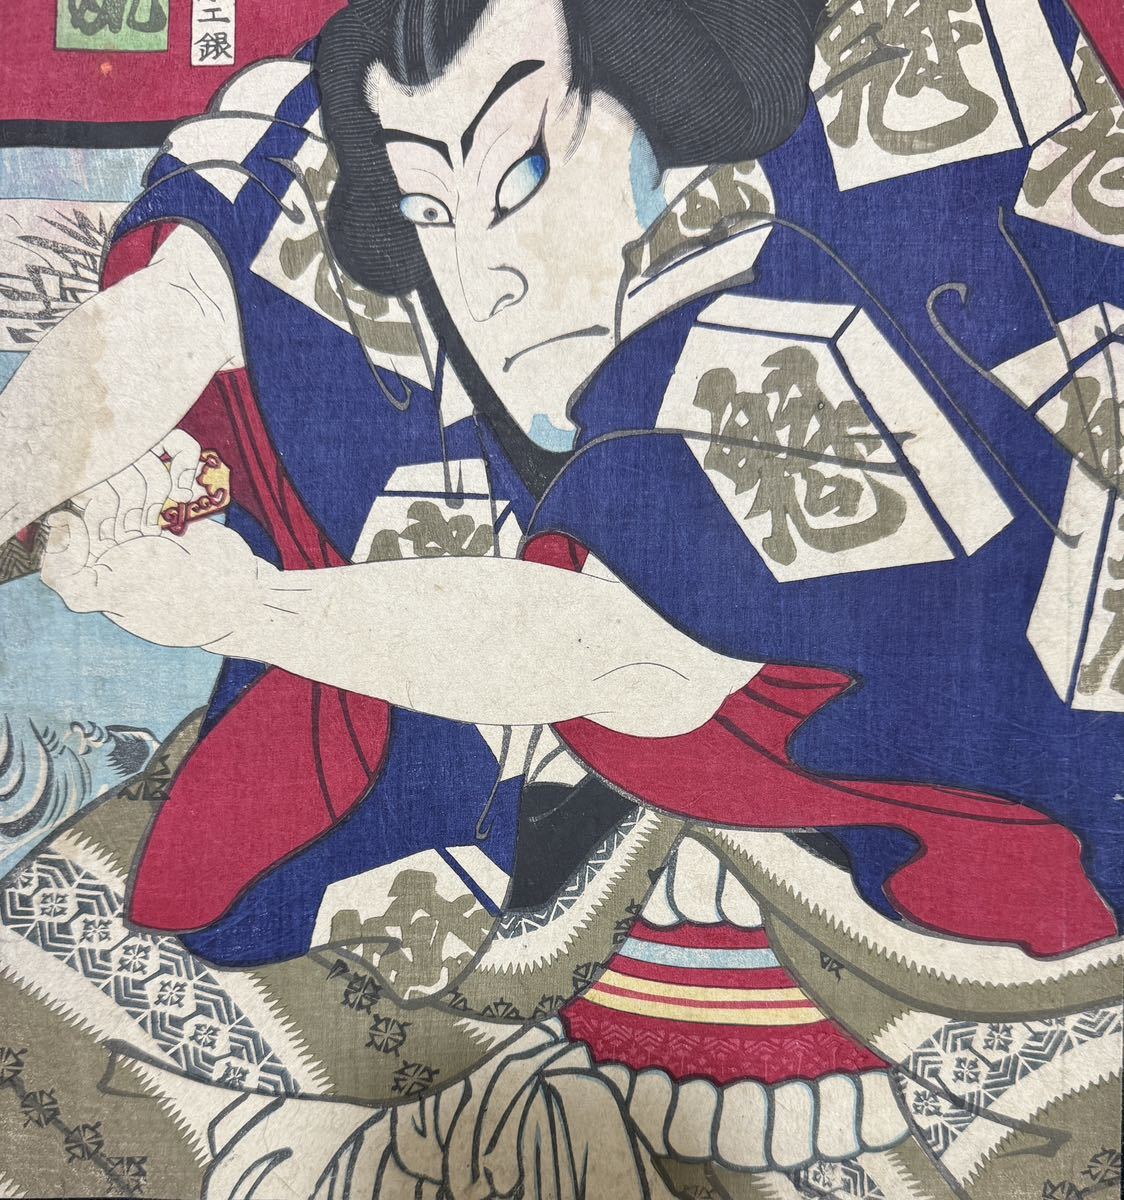  Meiji период / подлинный произведение .. страна . подлинный товар картина в жанре укиё гравюра на дереве сцена из кабуки изображение актеров газонная трава .... большой размер три листов .. обратная сторона удар .4